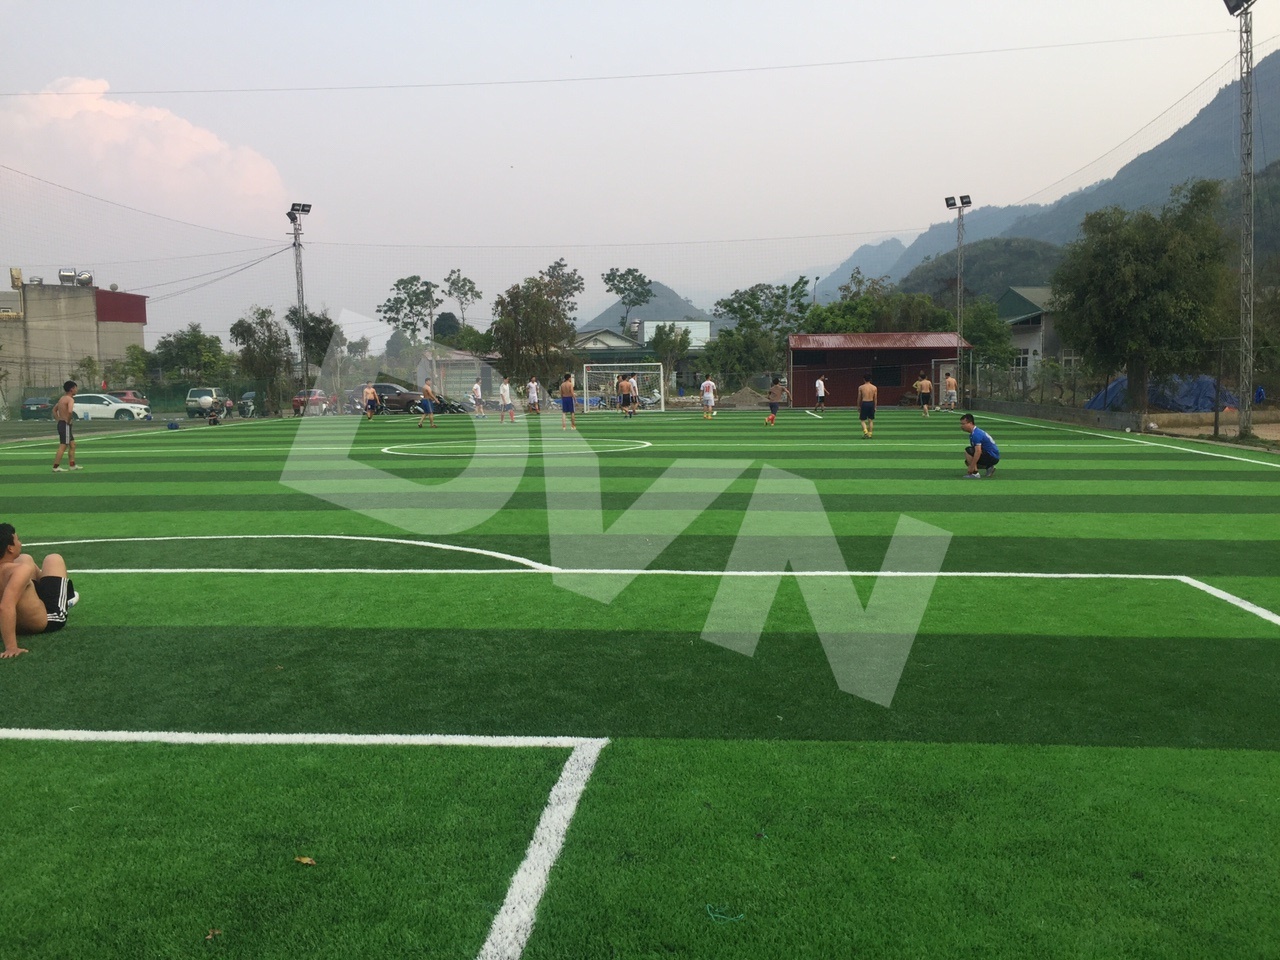 Thi công sân bóng đá cỏ nhân tạo tại TP Lai Châu - Công ty DVN ...